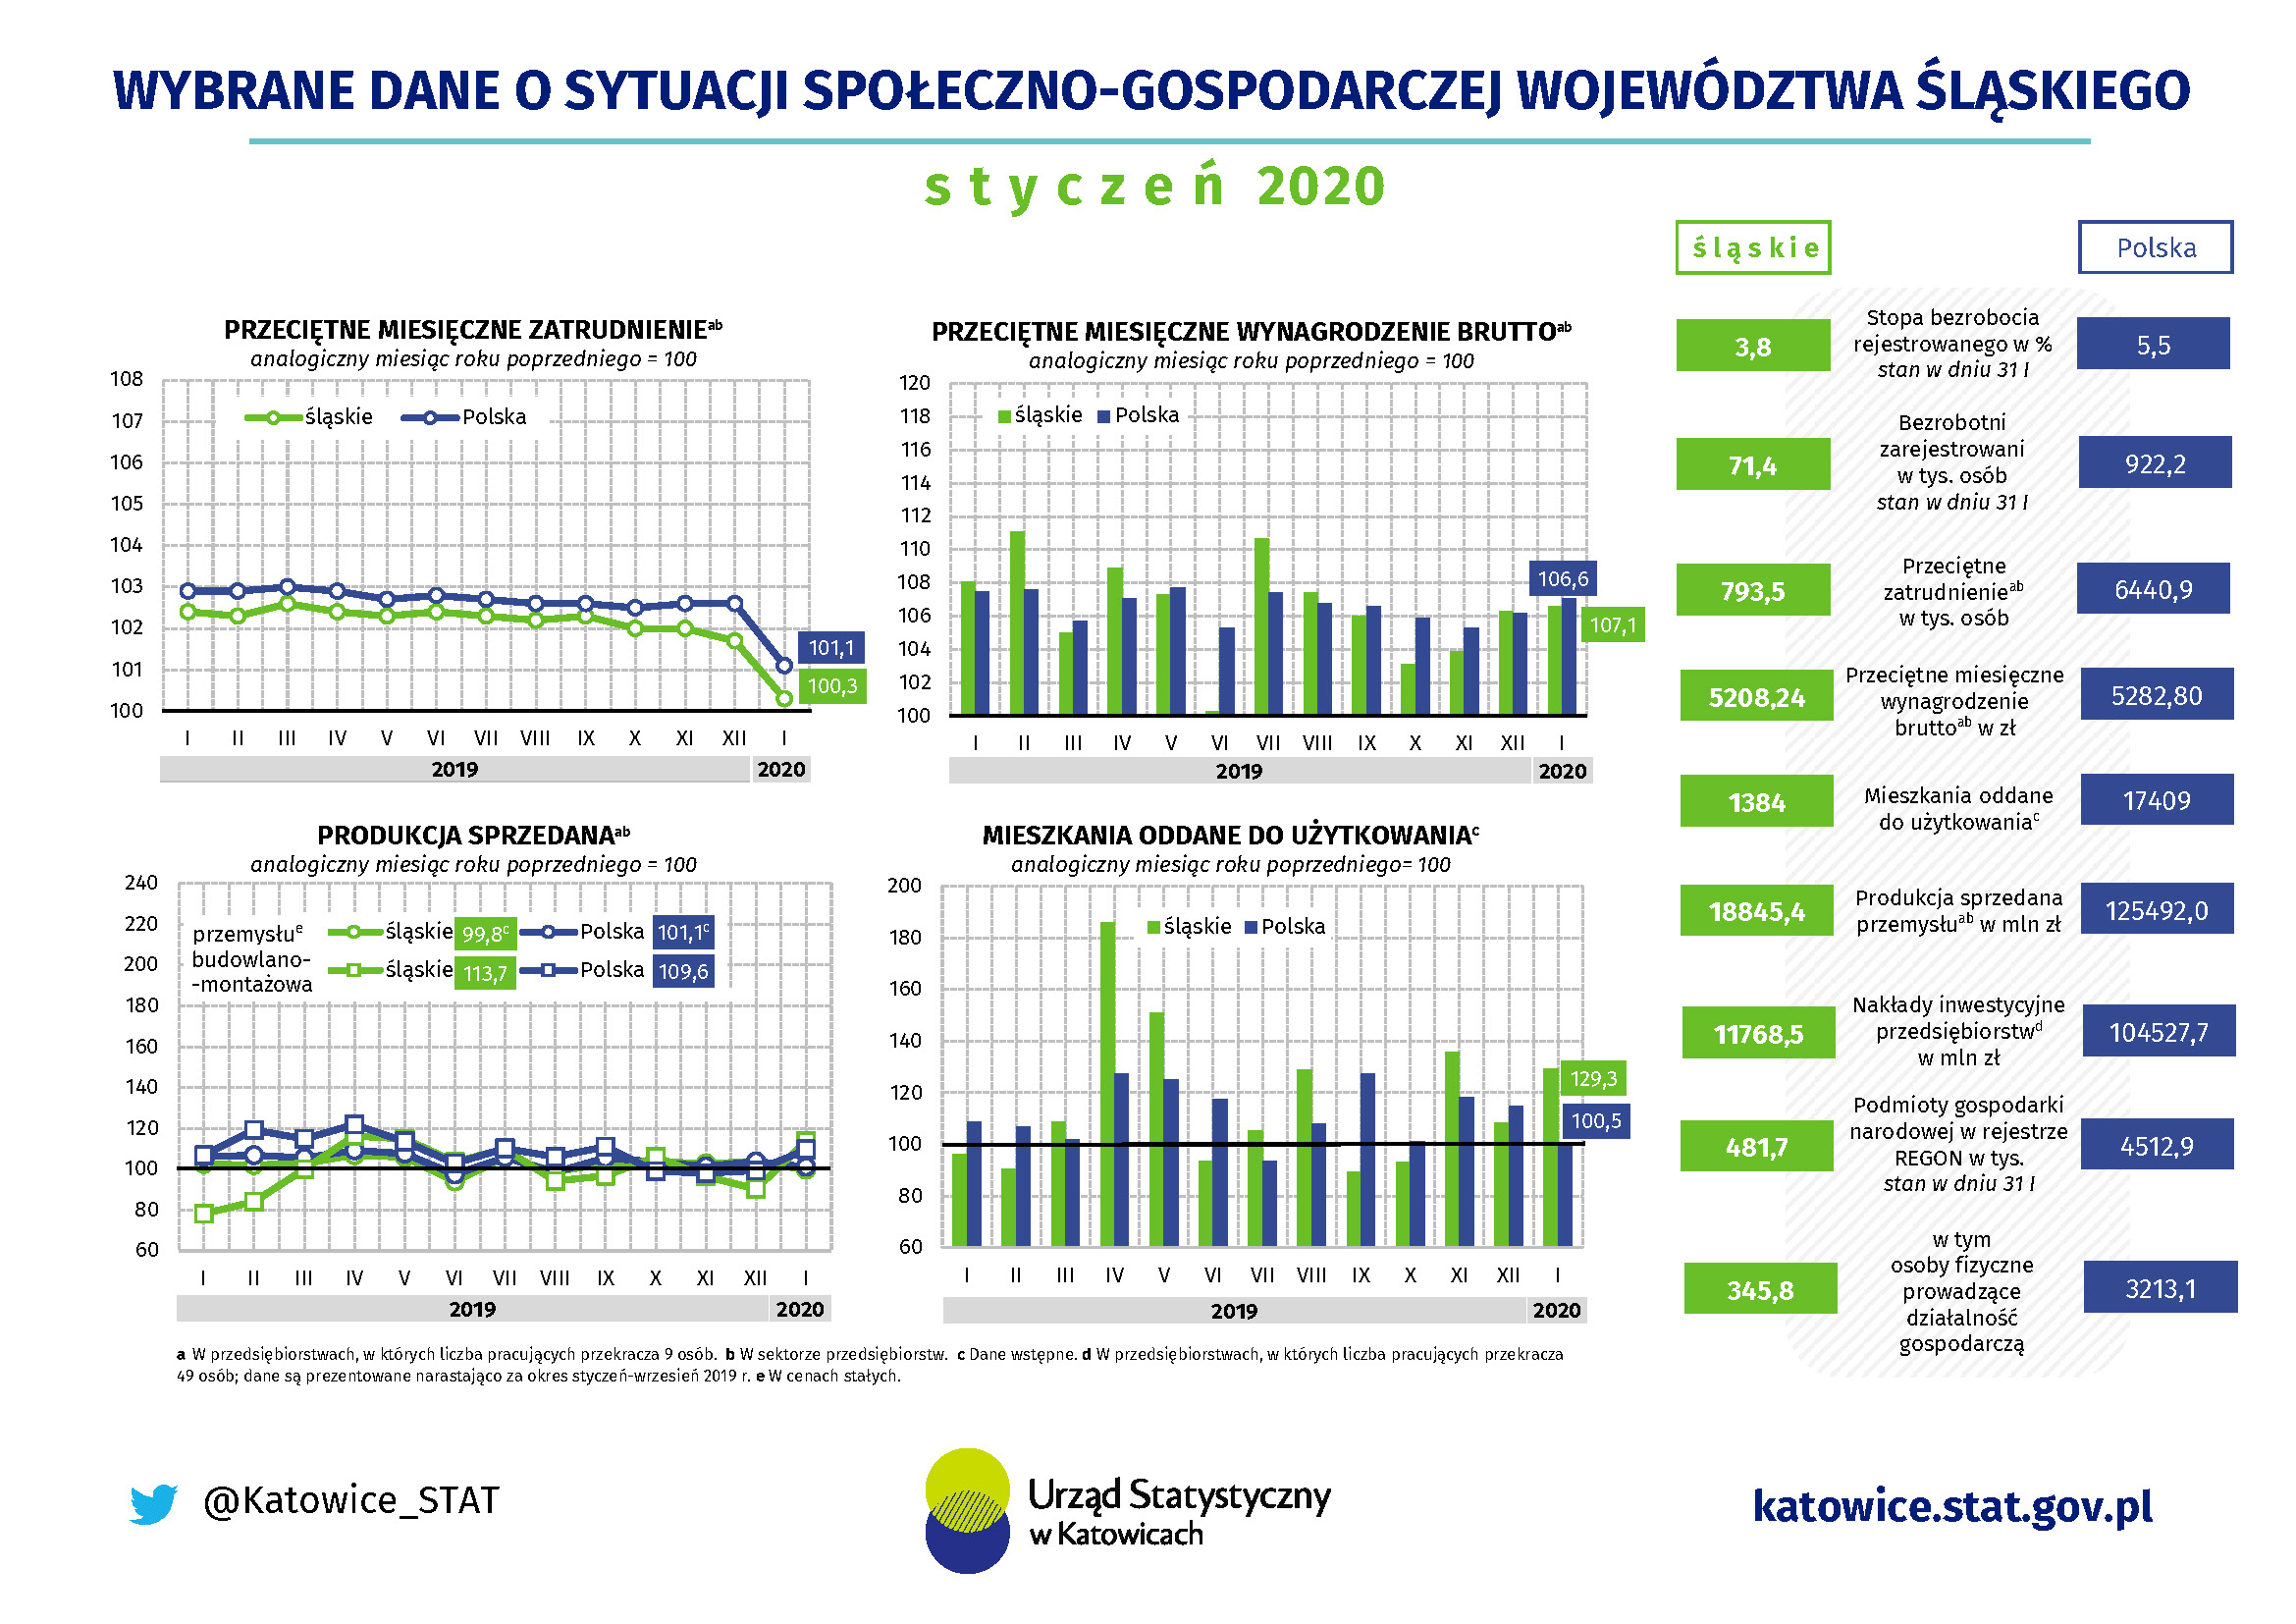 Infografika - Wybrane dane o sytuacji społeczno-gospodarczej województwa śląskiego w styczniu 2020 r.